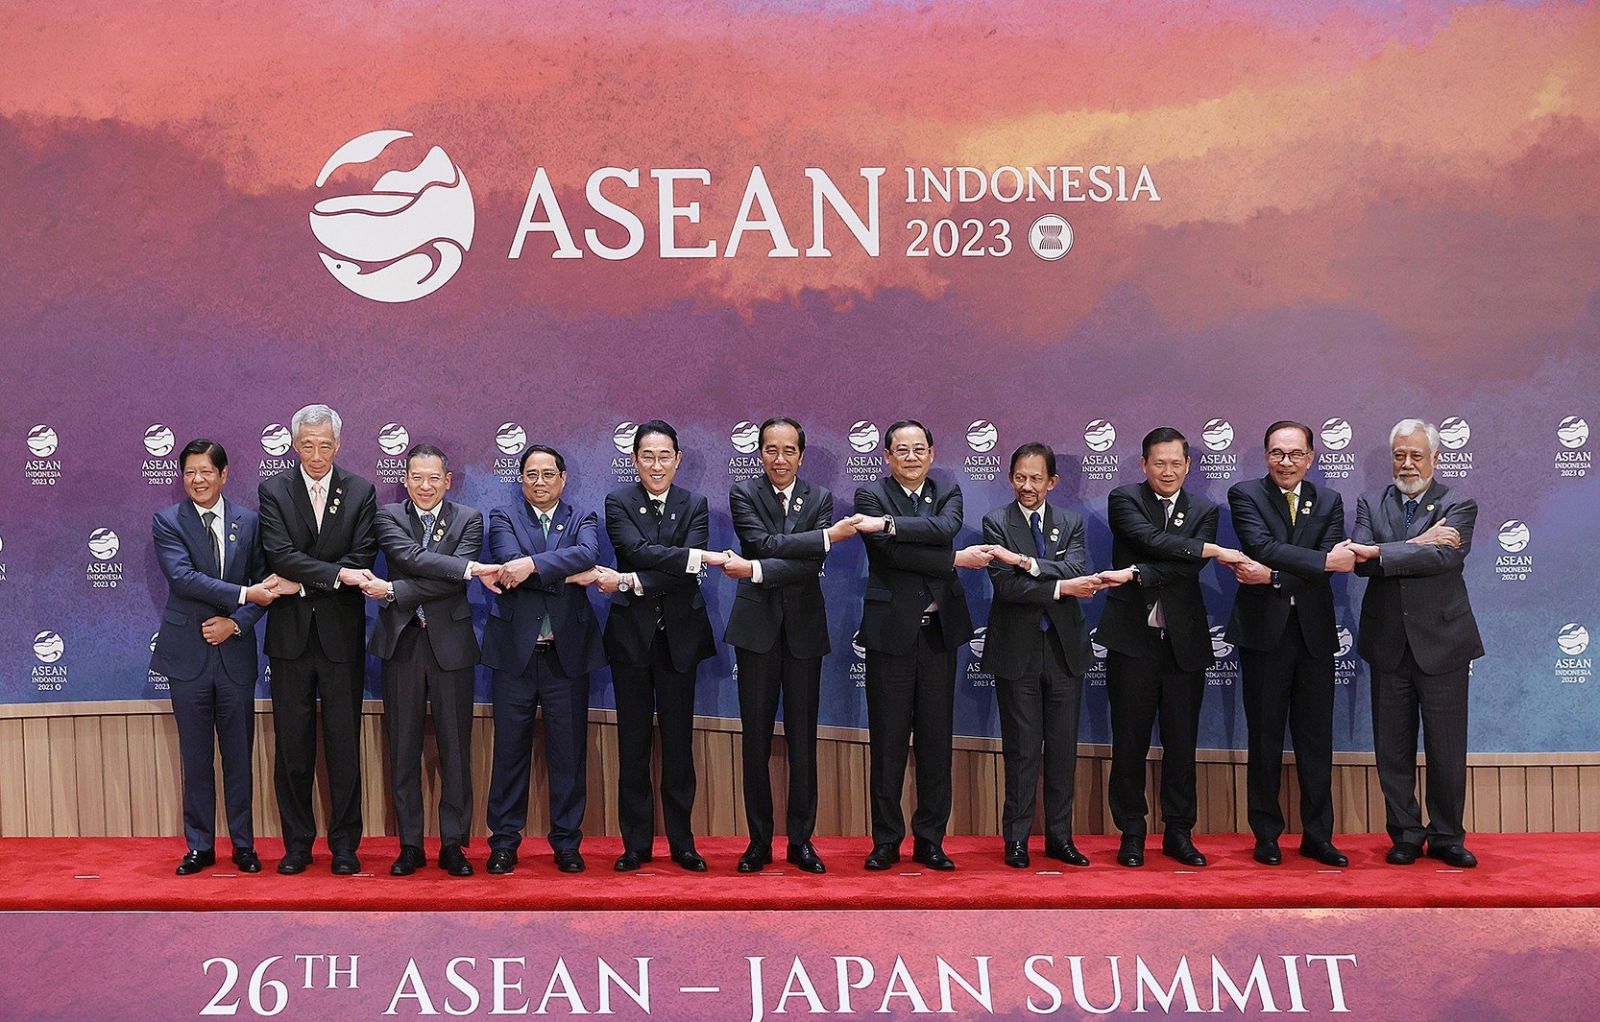 Nhật Bản đã chứng tỏ vai trò quan trọng của mình trong ASEAN